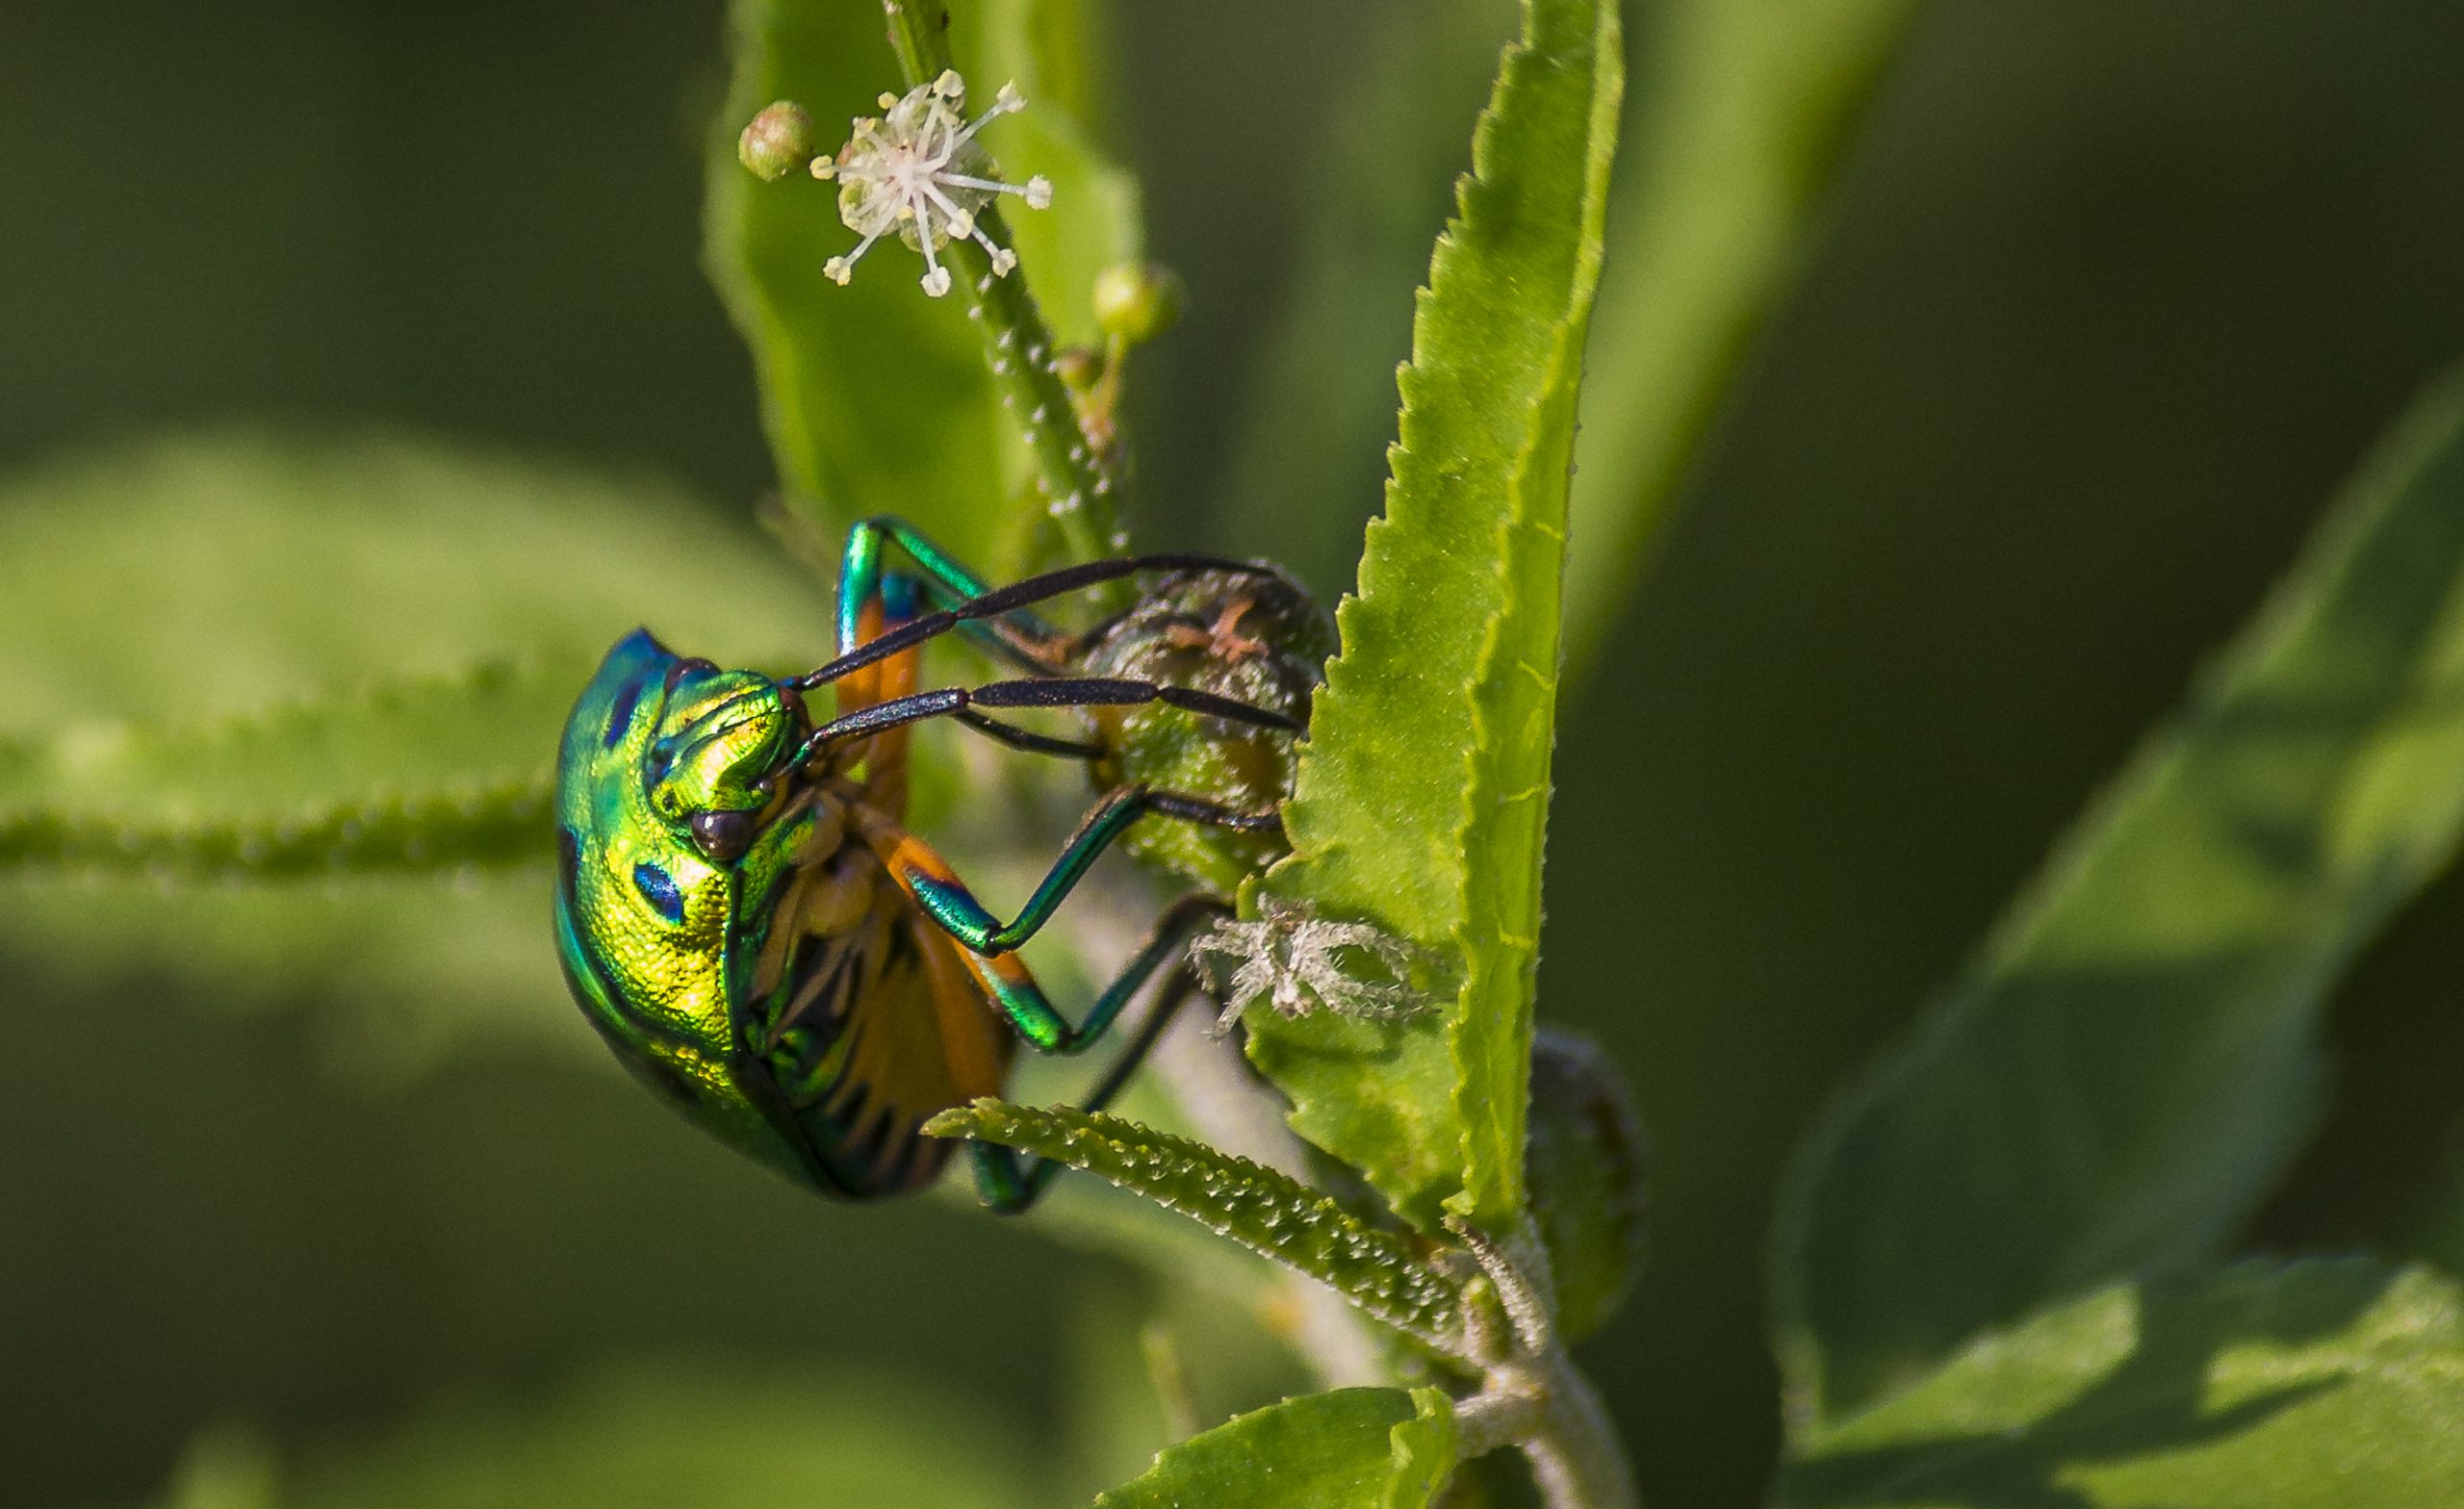 A jewel bug on a plant leaf